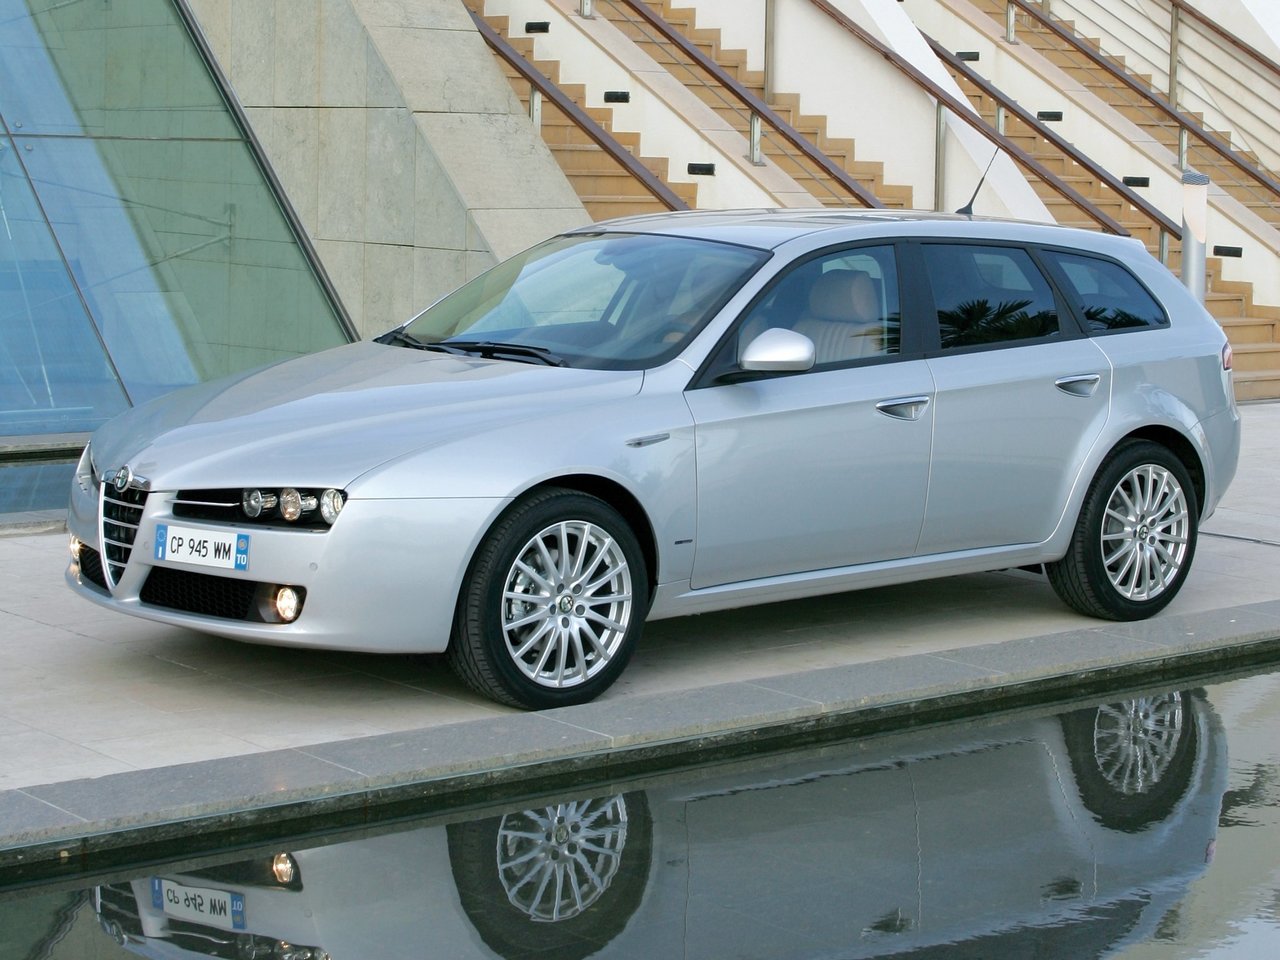 Расход газа семи комплектаций универсала пять дверей Alfa Romeo 159. Разница стоимости заправки газом и бензином. Автономный пробег до и после установки ГБО.